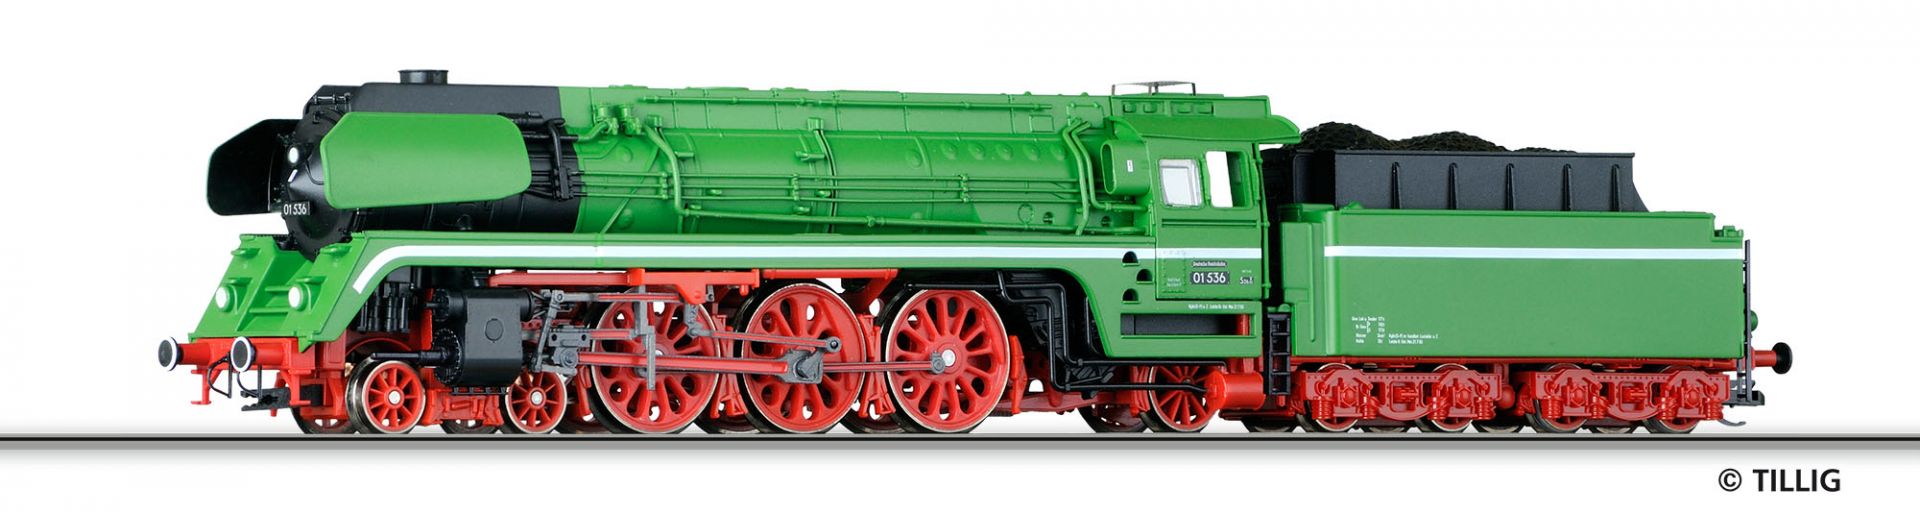 501205 | Steam locomotive DR